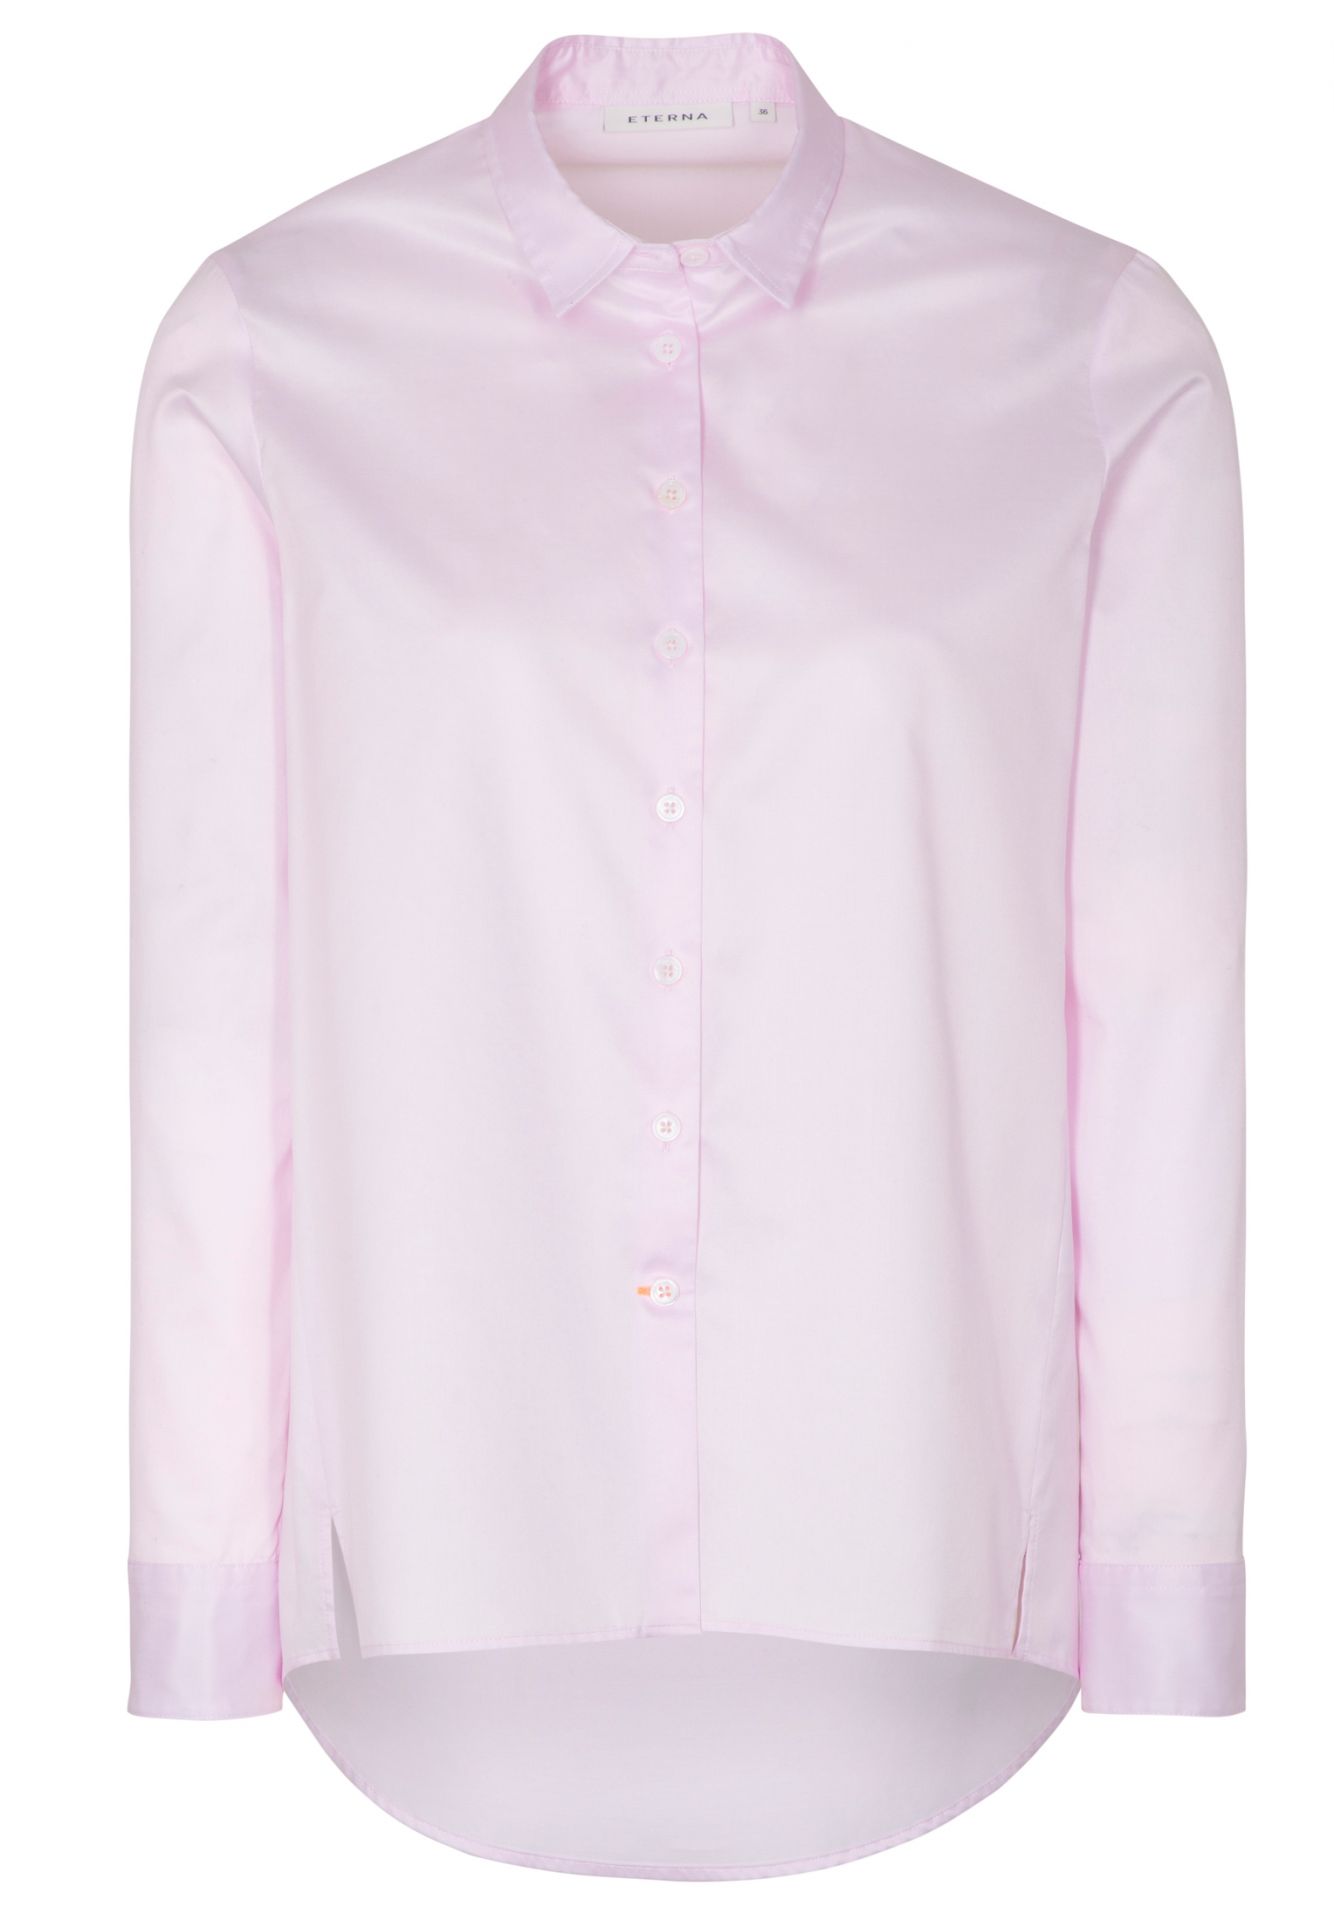 Bluse SOFT LUXURY SHIRT Lose Fit Eterna® Rosa Loose Fit 63 cm Hemd-Kragen  50 günstig besticken und bedrucken | cotton ART®